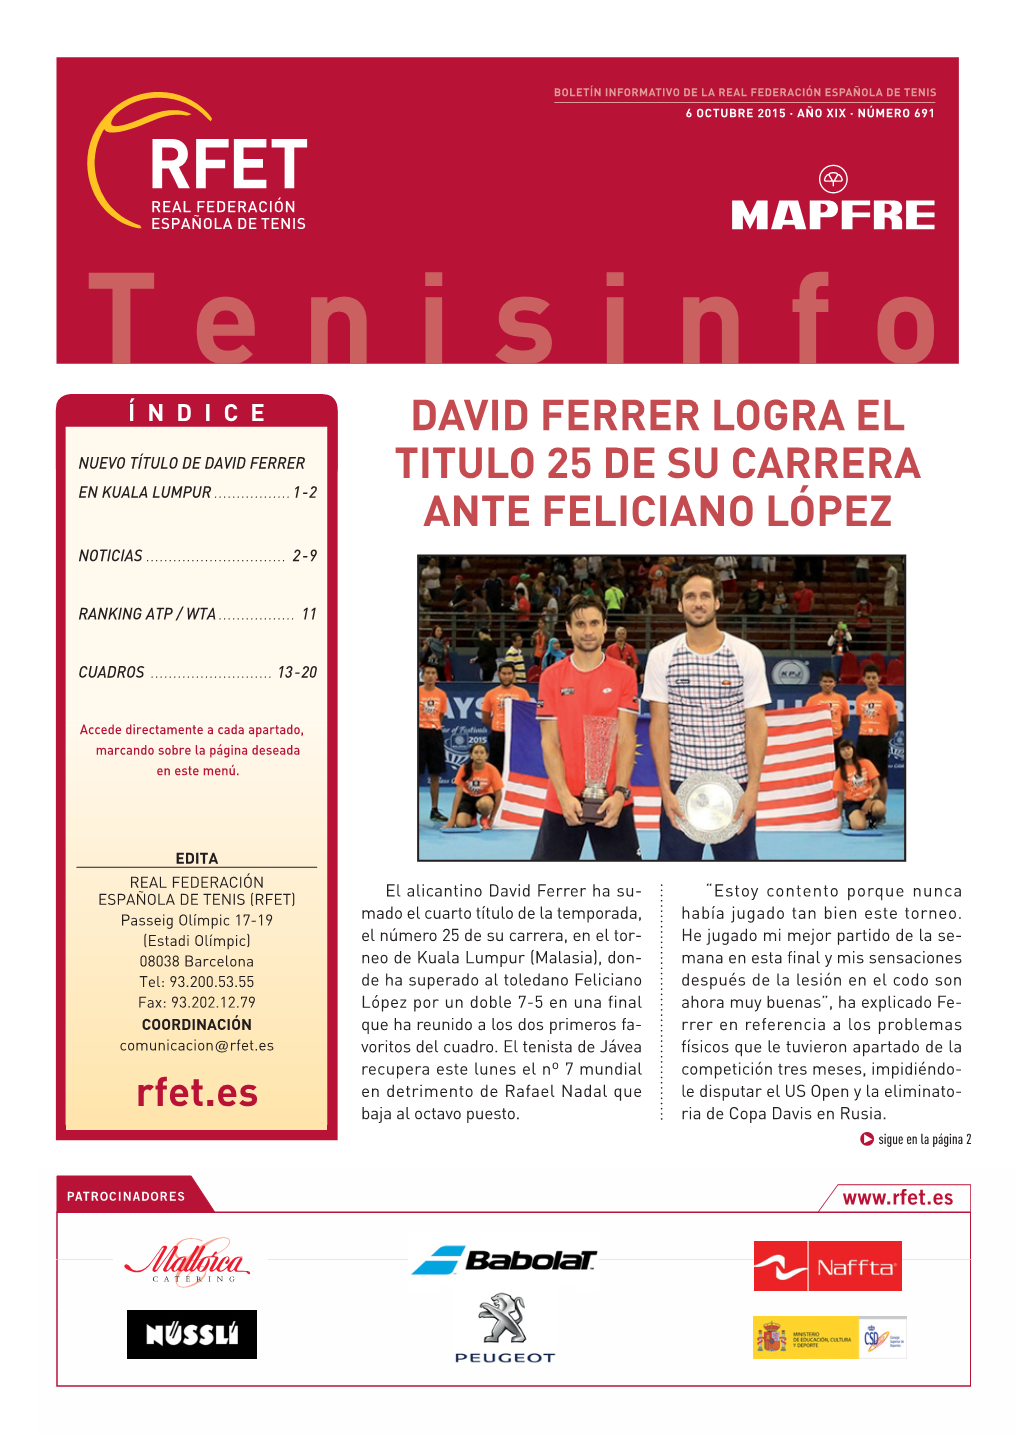 David Ferrer Logra El Titulo 25 De Su Carrera Ante Feliciano López